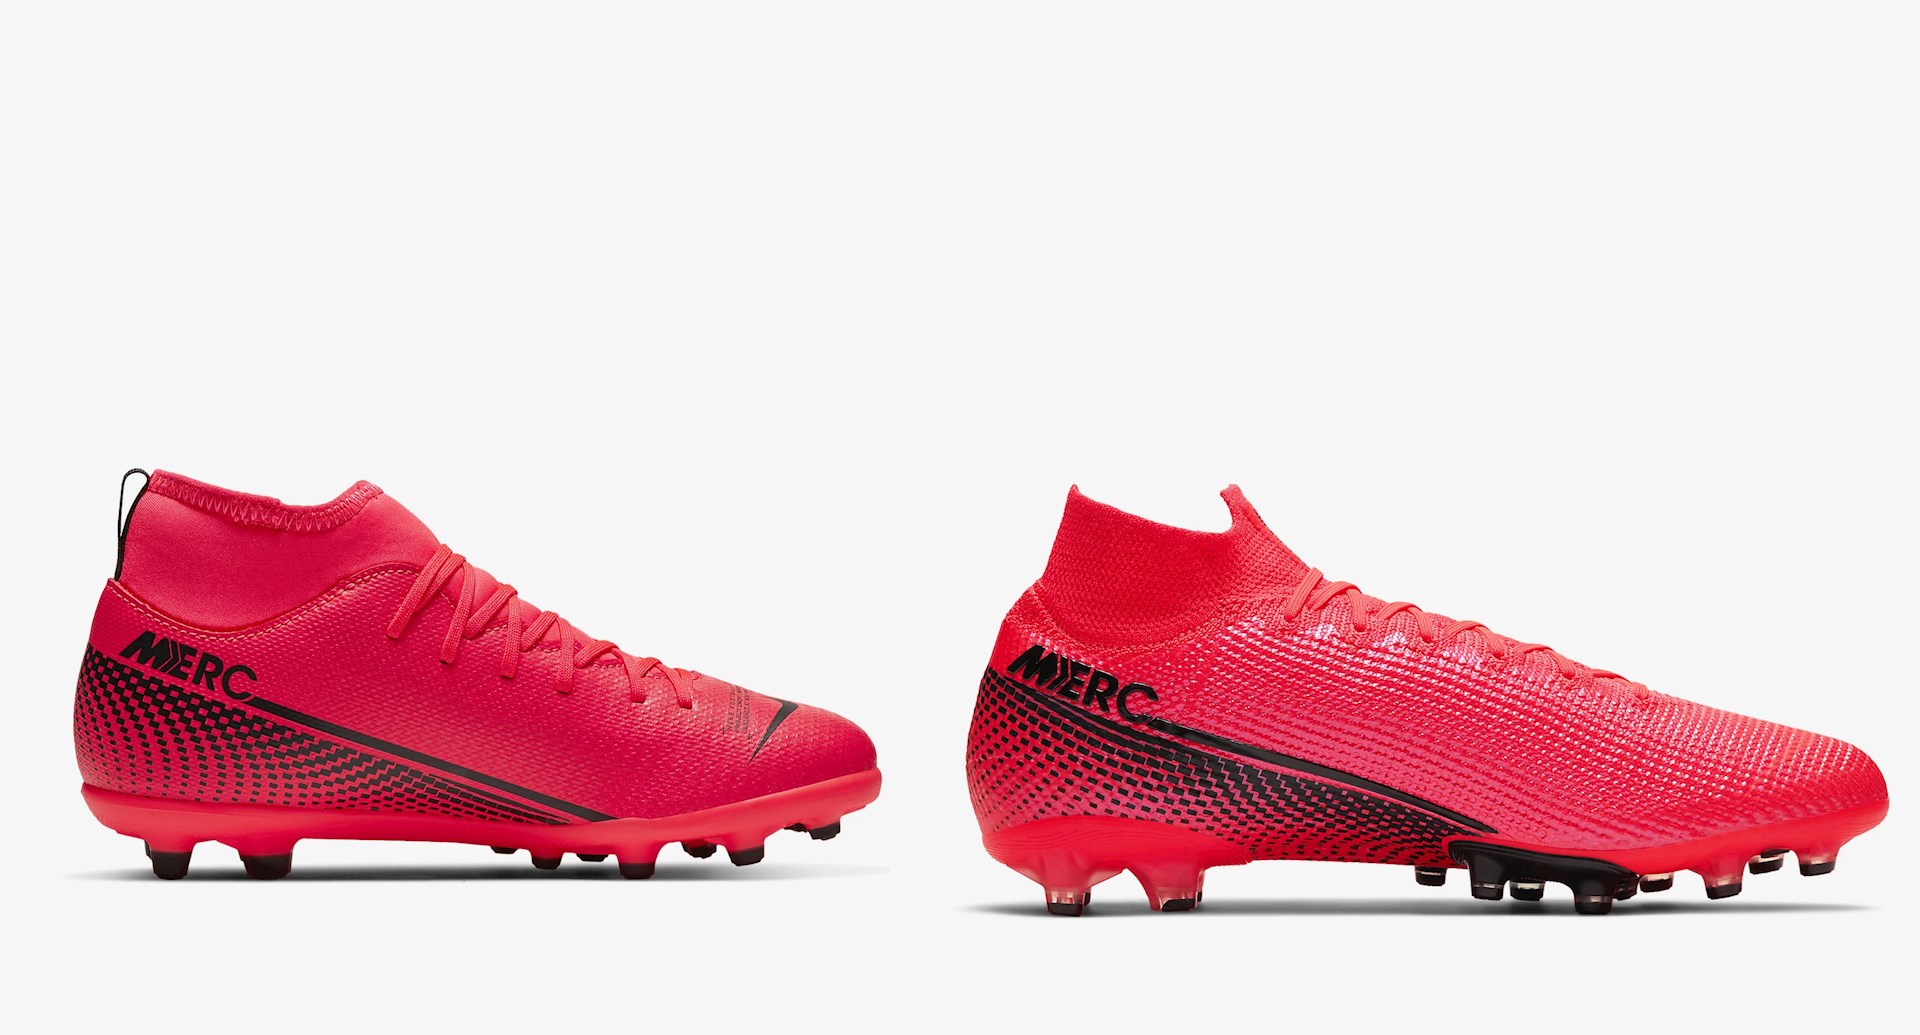 Explosieven zoom zout Goedkope Nike Mercurial Superfly voetbalschoenen met sok -  Voetbal-schoenen.eu